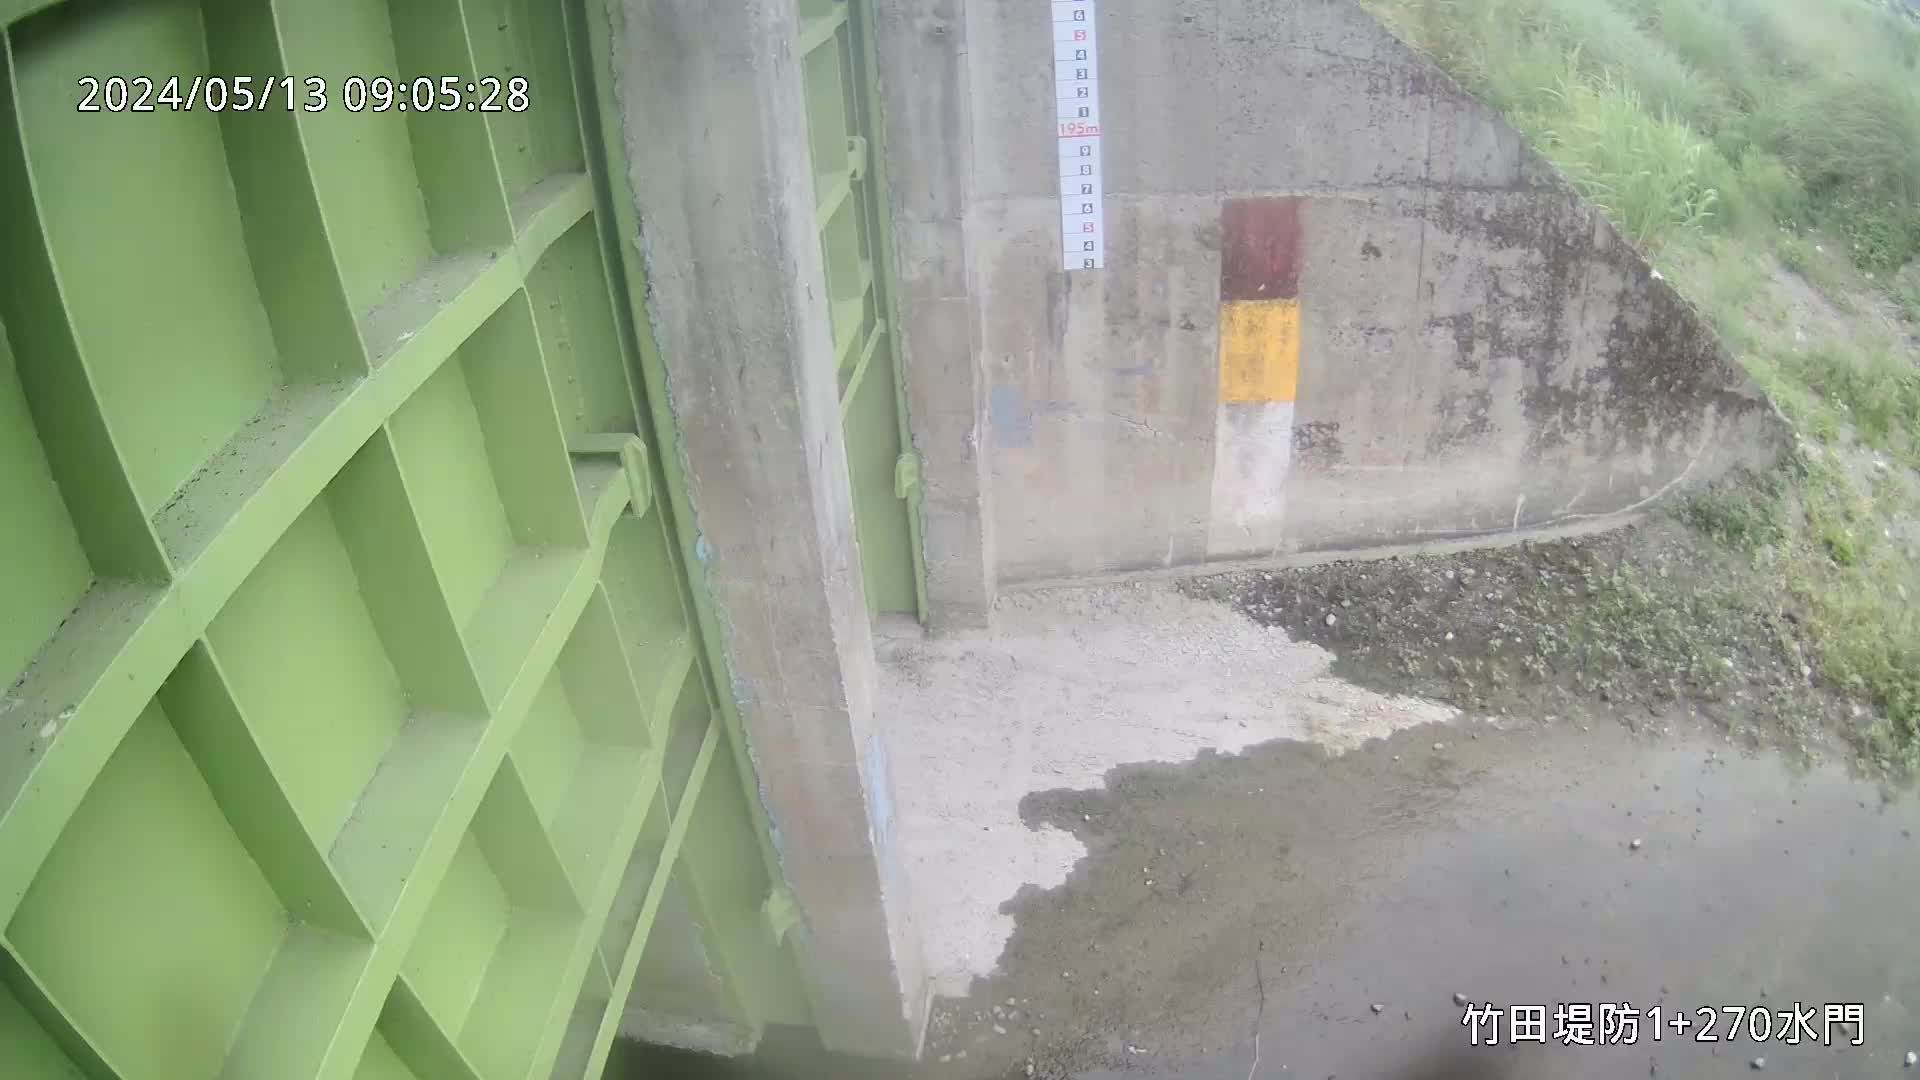 水利署水資源  九河局 竹田堤防1+270水門 槍型攝影機 距離6.3公里 氣溫21.3度